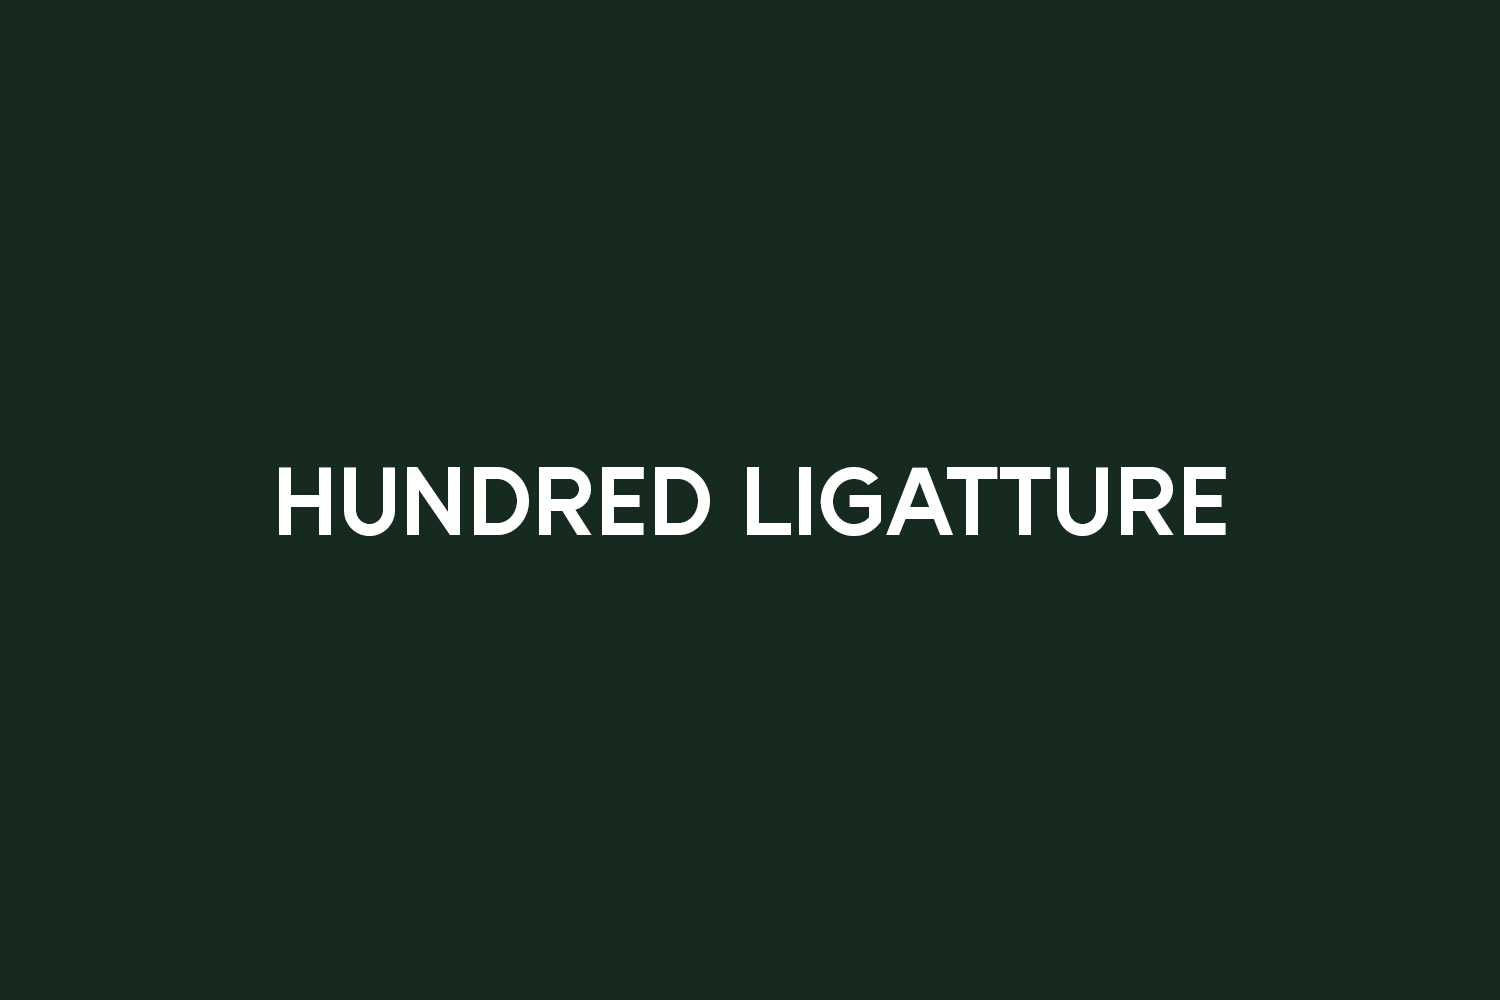 Hundred Ligatture Free Font